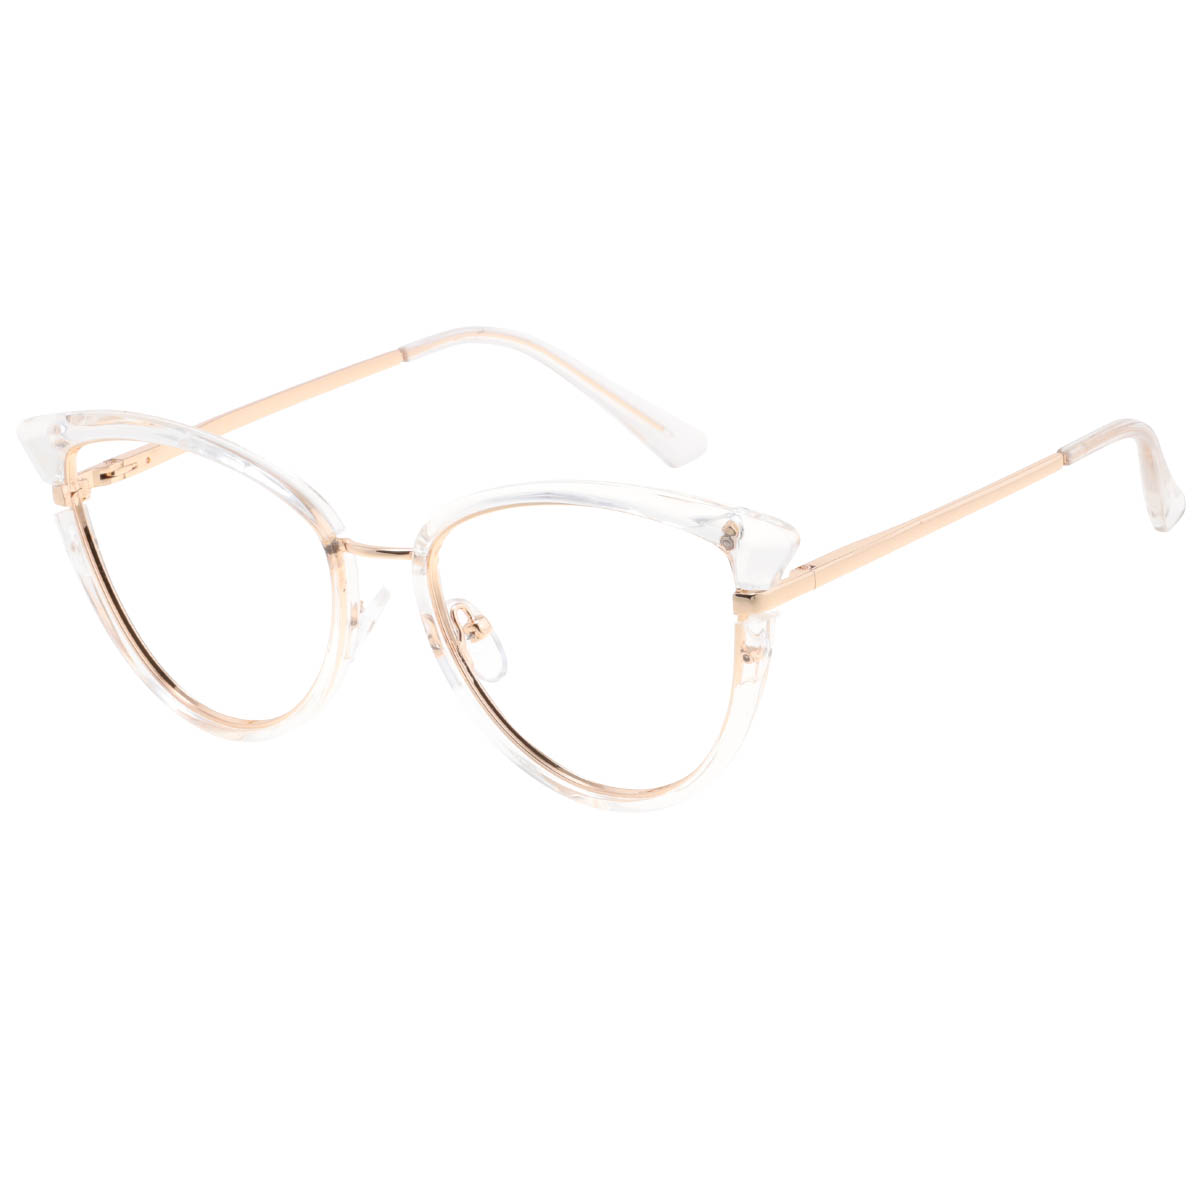 Barcelona - Cat-eye Transparent-Gold Reading Glasses for Women